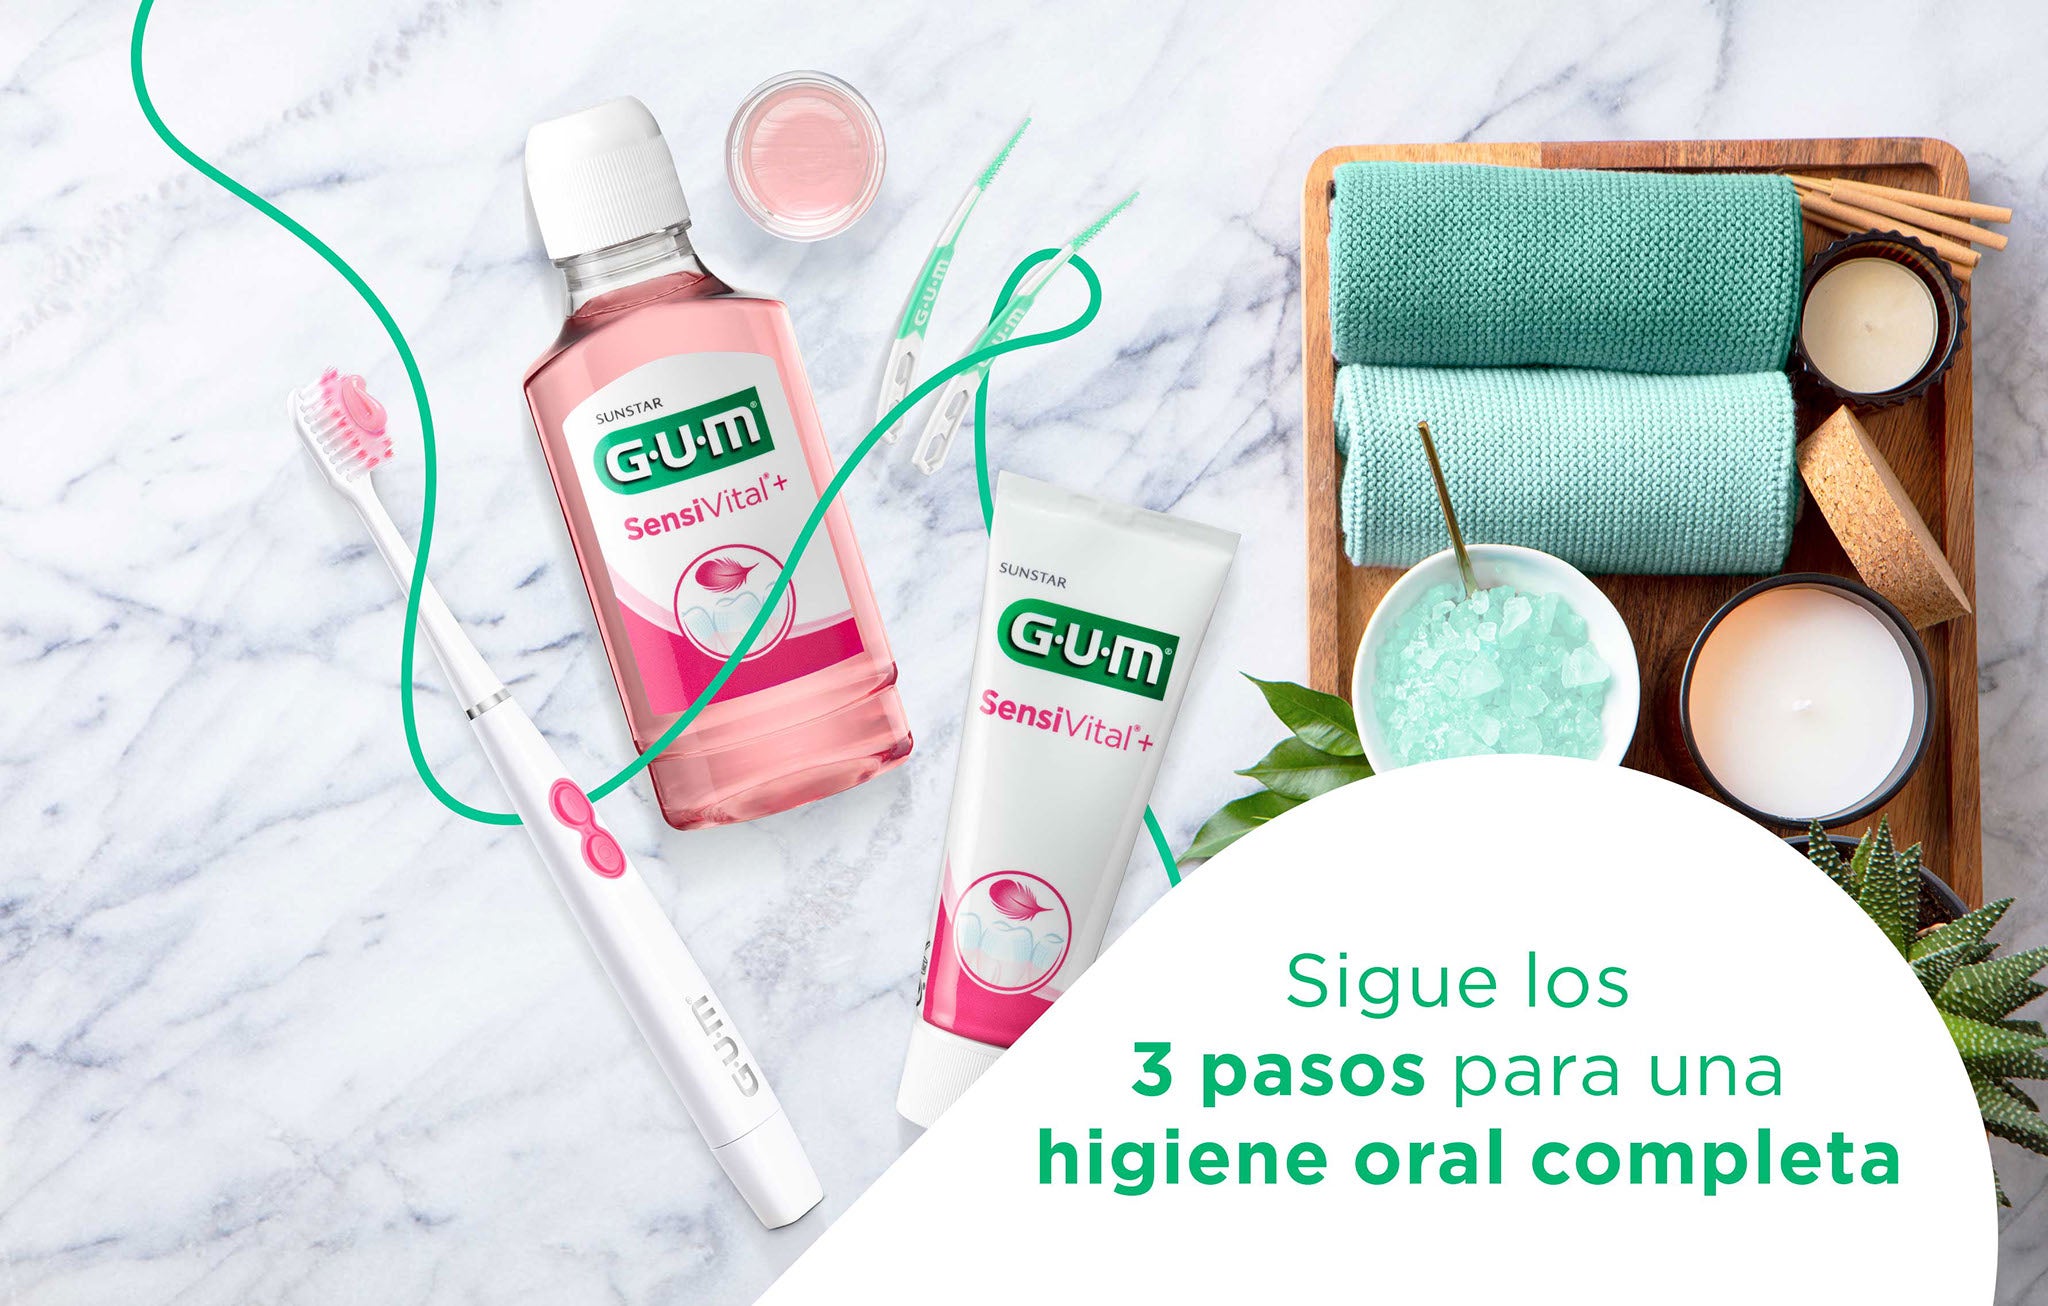 3 pasos para una rutina de higiene oral completa: cepillo de dientes GUM SONIC SENSITIVE, pasta de dientes GUM SensiVital+ y enjuague bucal GUM SensiVital+